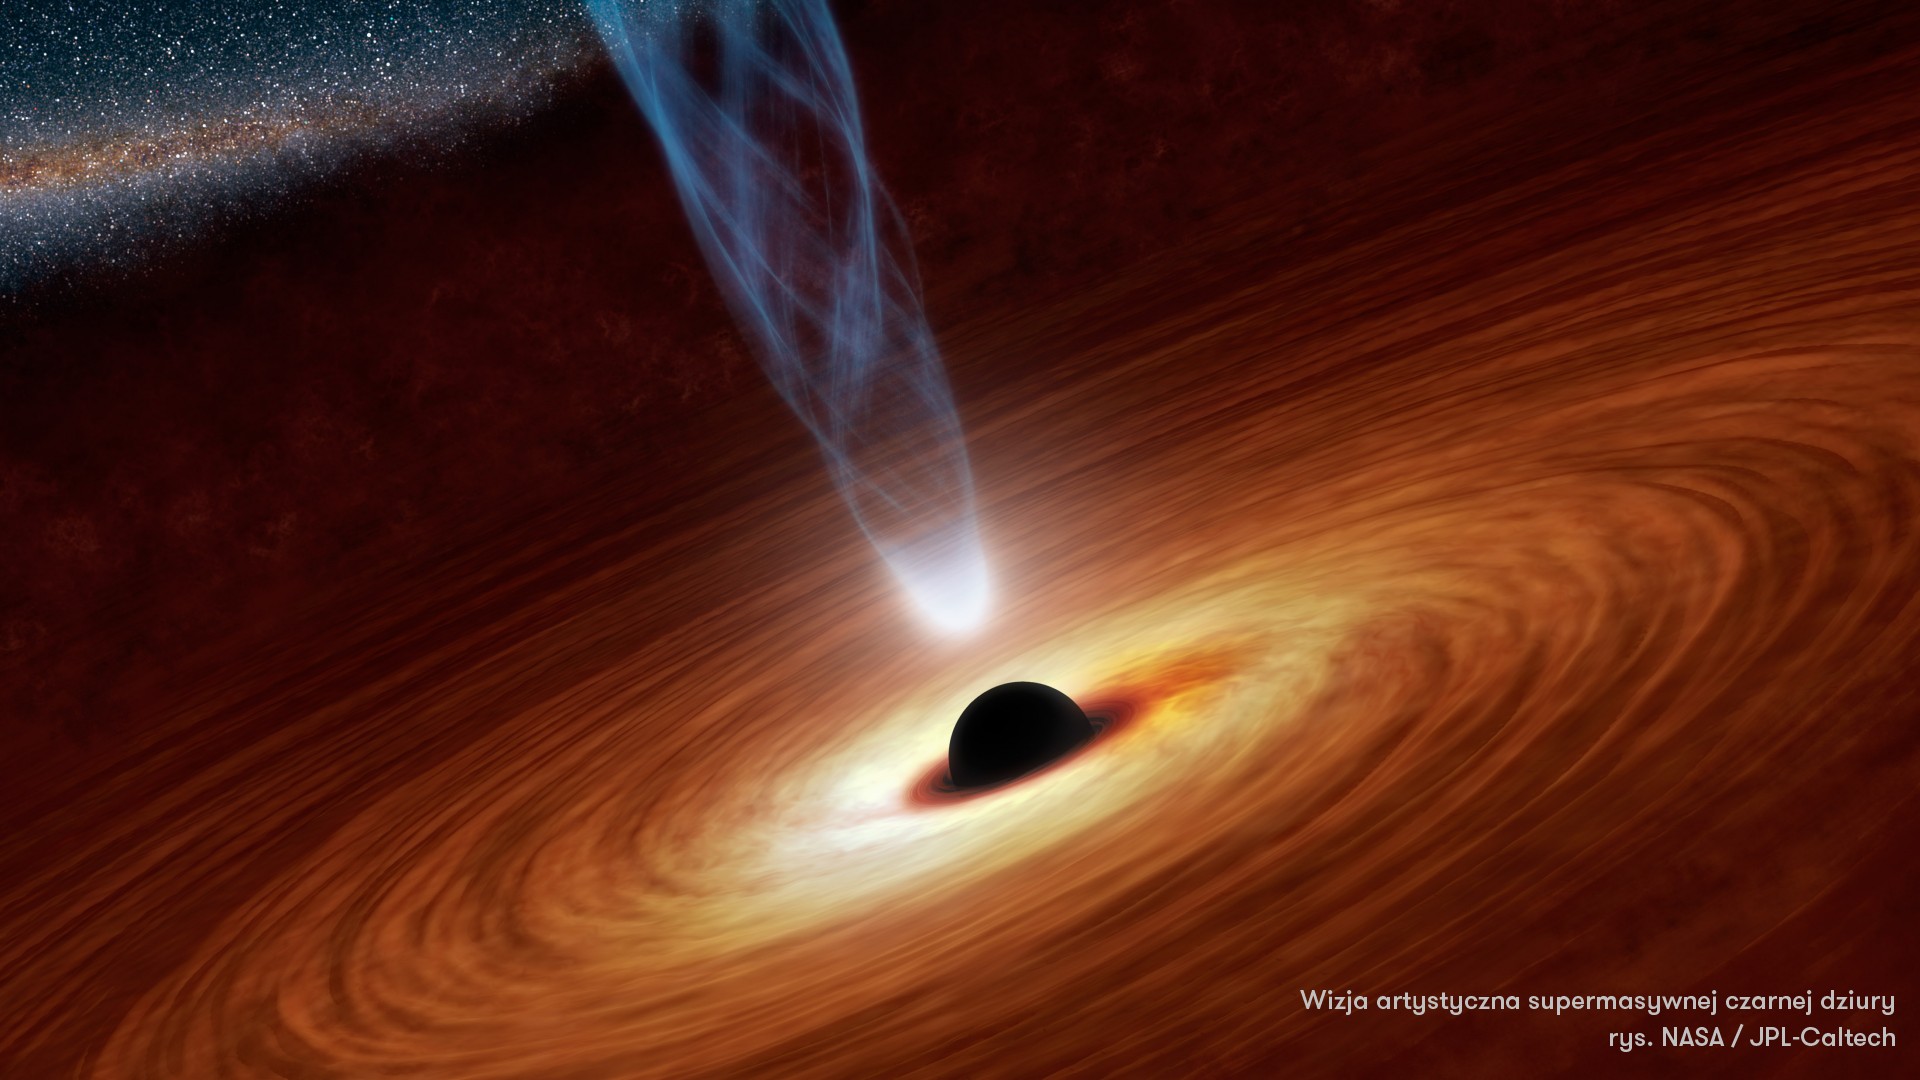 Wizja artystyczna supermasywnej czarnej dziury